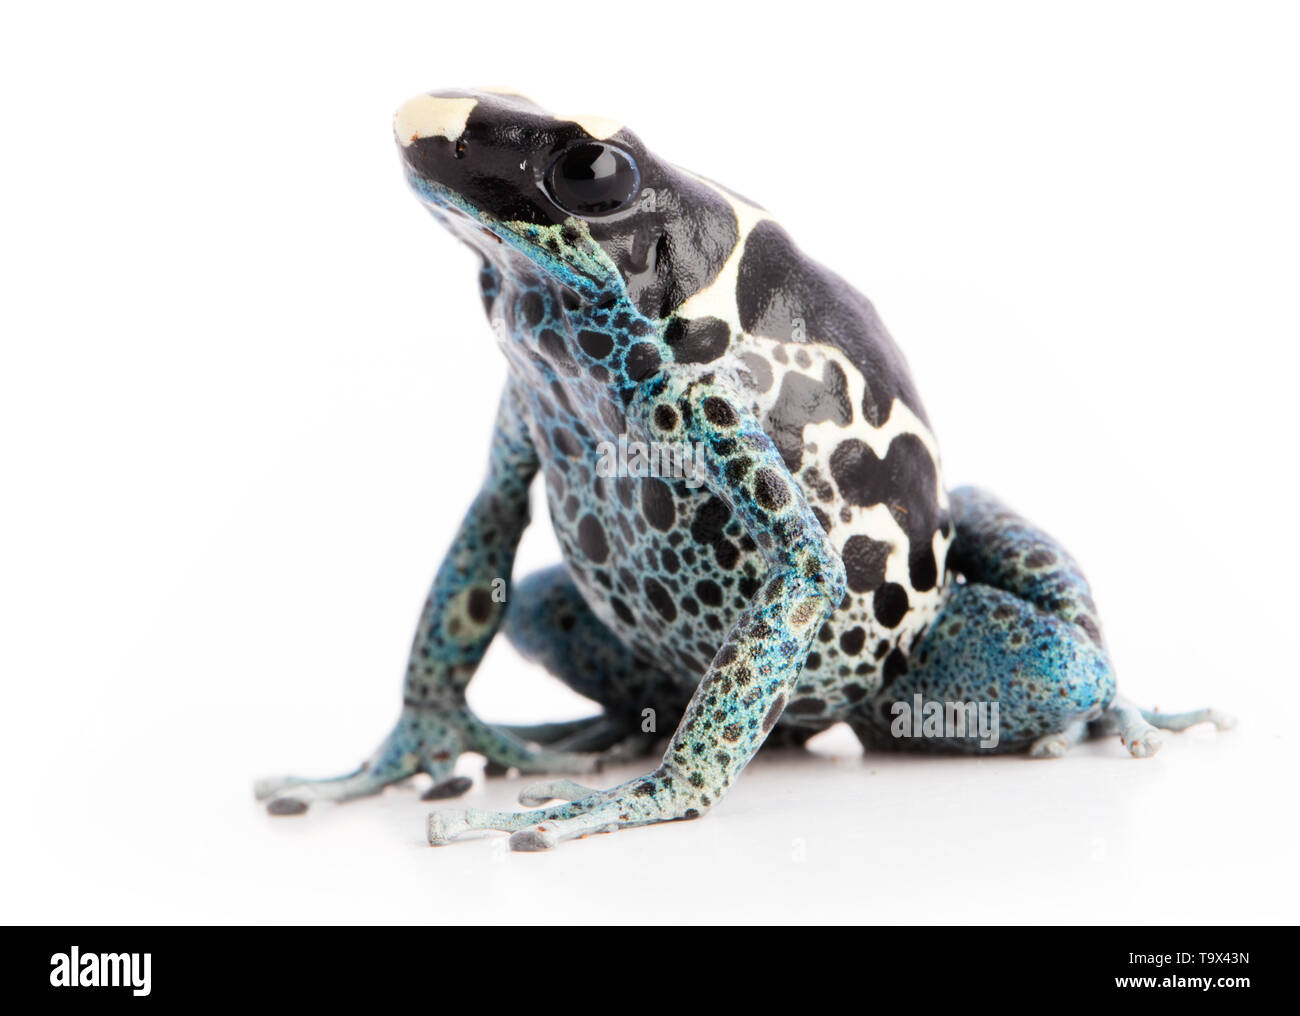 Dendrobates tinctorius Powder Blue Dyeing Poison Arrow Frog isolated on white background. Stock Photo